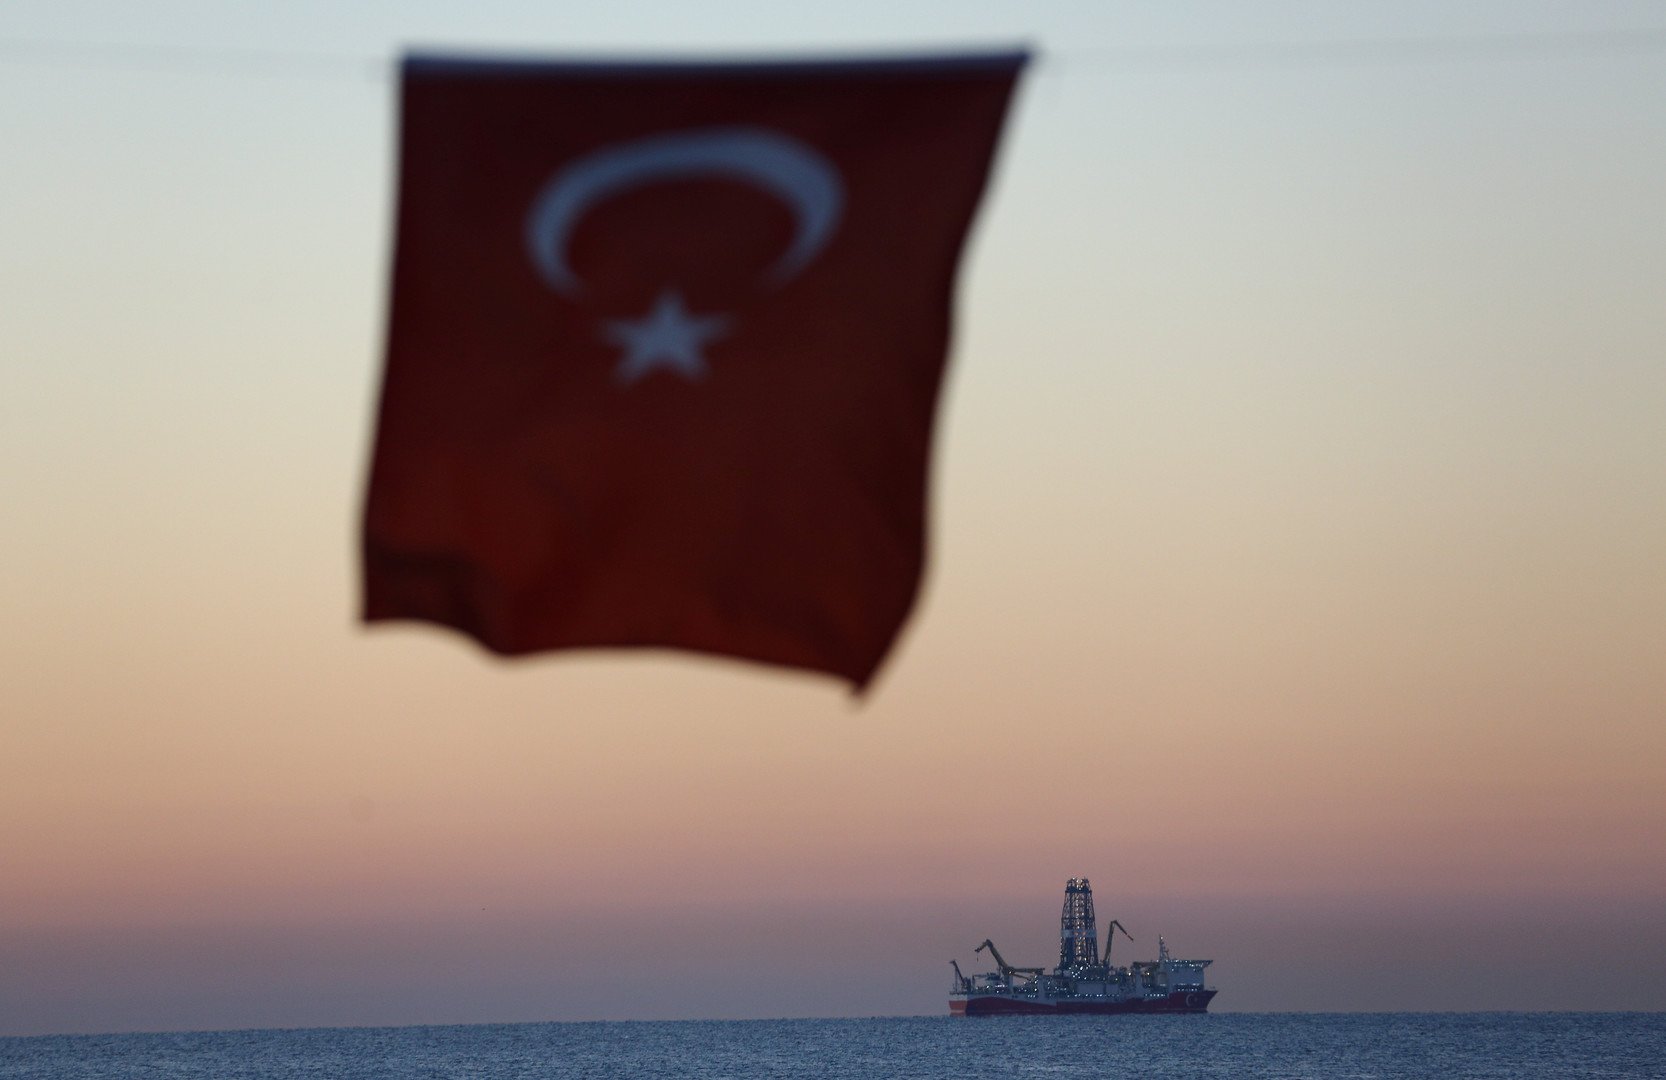 تركيا تعليقا على التوتر شرق المتوسط: ثمة أطراف لها حسابات قذرة وعليها التراجع عن جنونها